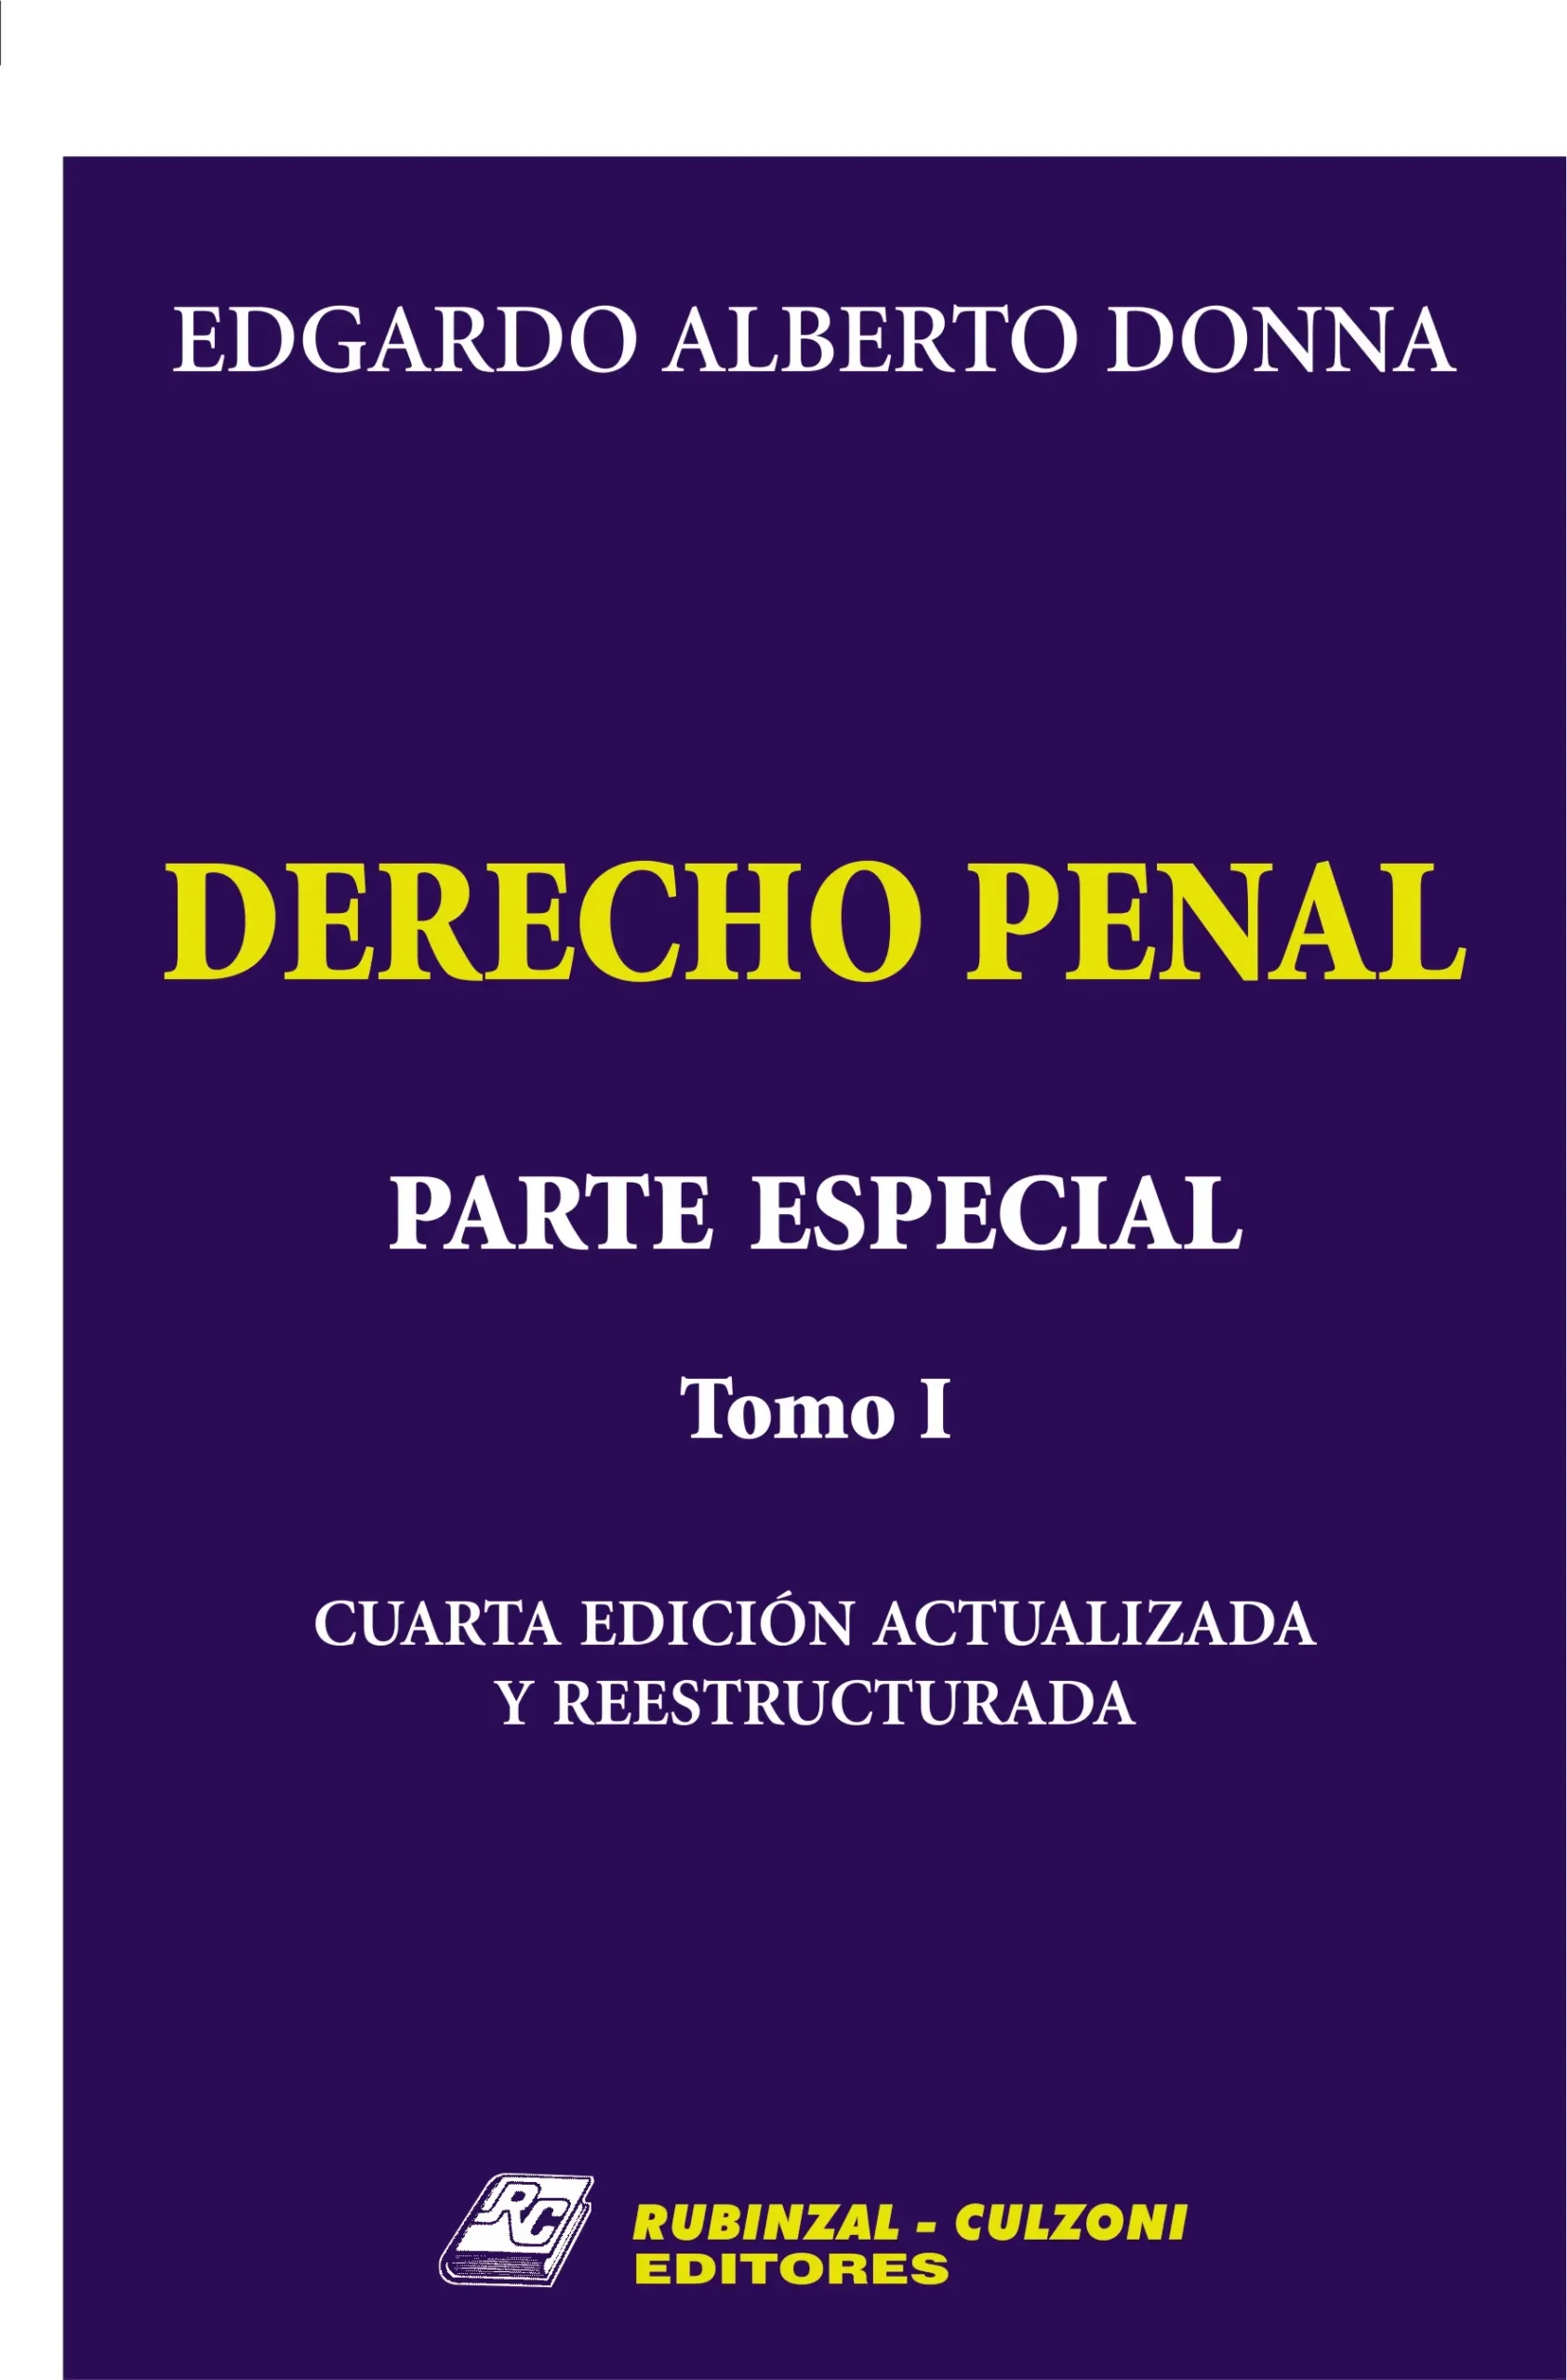 derecho penal argentino parte especial resumen - Qué es la parte especial del derecho penal